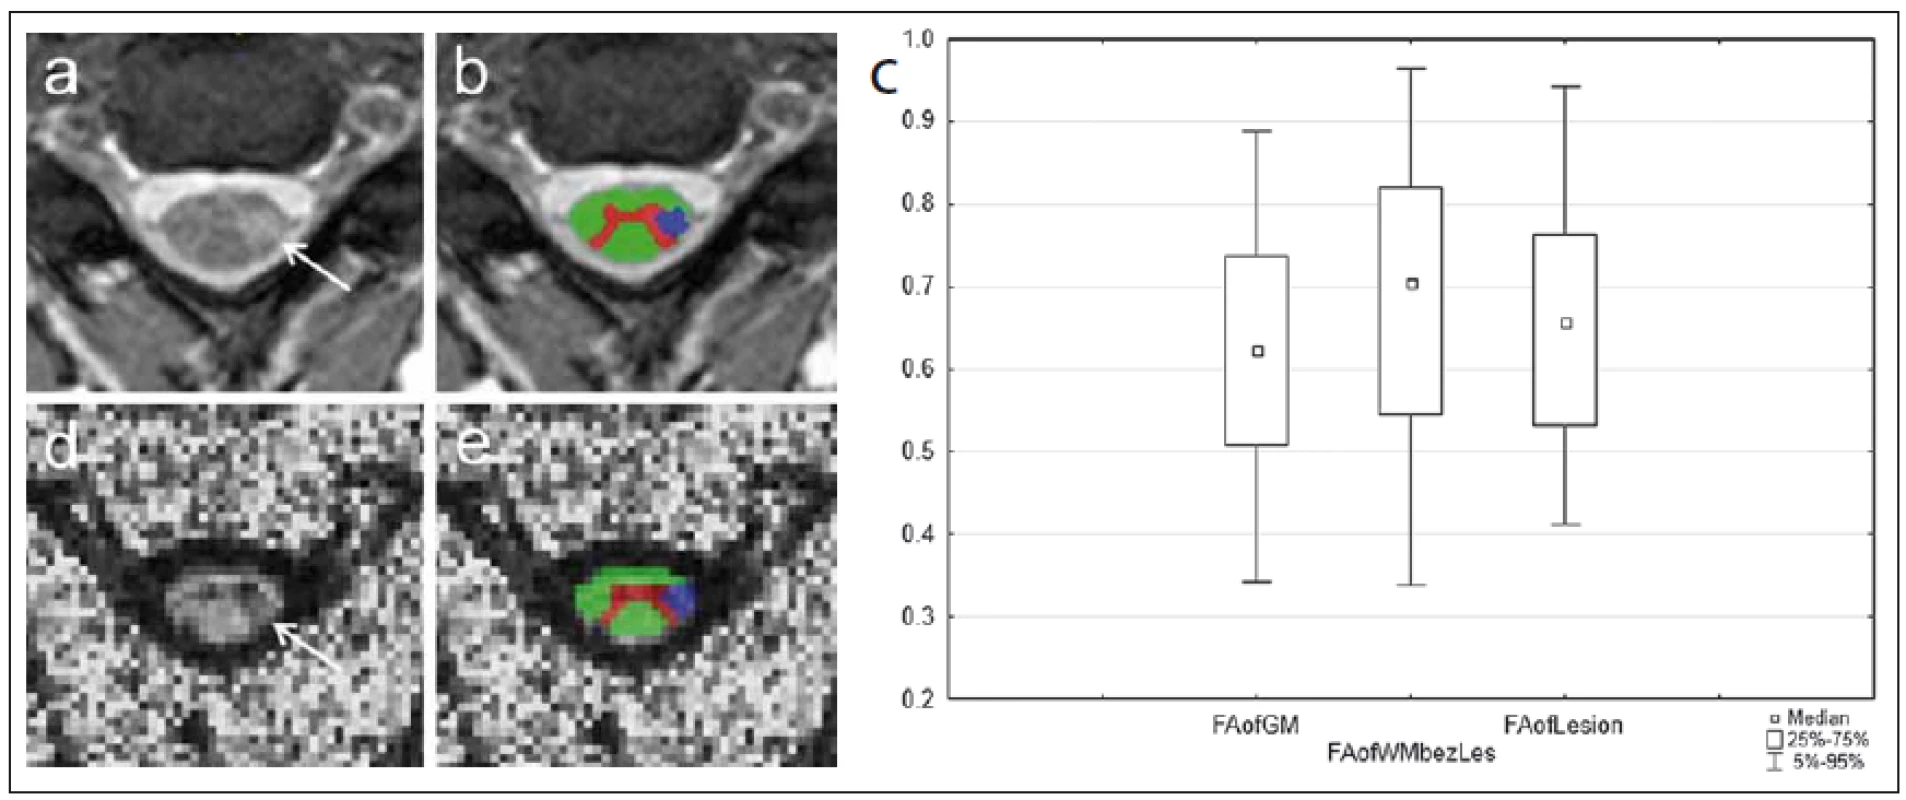 MR vyšetření u pacienta s roztroušenou sklerózou s hyperintenzním míšním ložiskem patrným na axiálním T2 váženém obraze gradientního echa (šipka na panelu a). Léze je sledovatelná i v obraze zobrazení tenzorů difuze v podobě snížení intenzity signálu na mapě frakční anizotropie (FA) (d).
Fig. 7. MRI examination in a patient with multiple sclerosis with a hyperintense spinal cord plaque apparent on the axial T2-weighted image of gradient echo (arrow on panel a). The lesion is perceptible also in the diffusion tensor imaging image in the form of reduced signal intensity on the fractional anisotropy (FA) map (d).